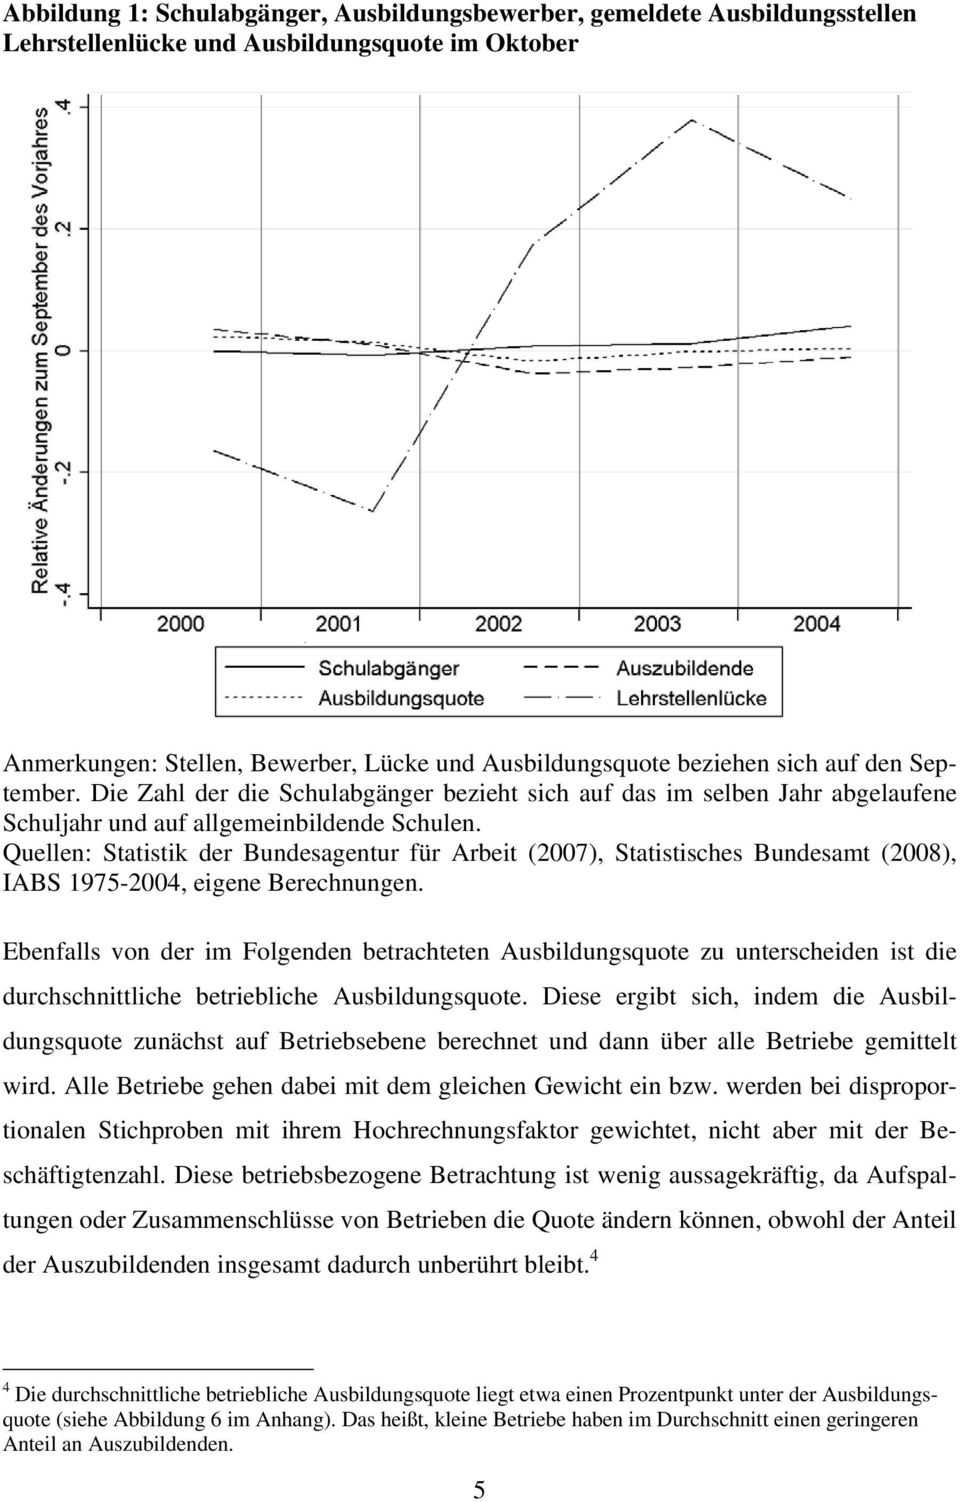 Quellen: Statistik der Bundesagentur für Arbeit (2007), Statistisches Bundesamt (2008), IABS 1975-2004, eigene Berechnungen.